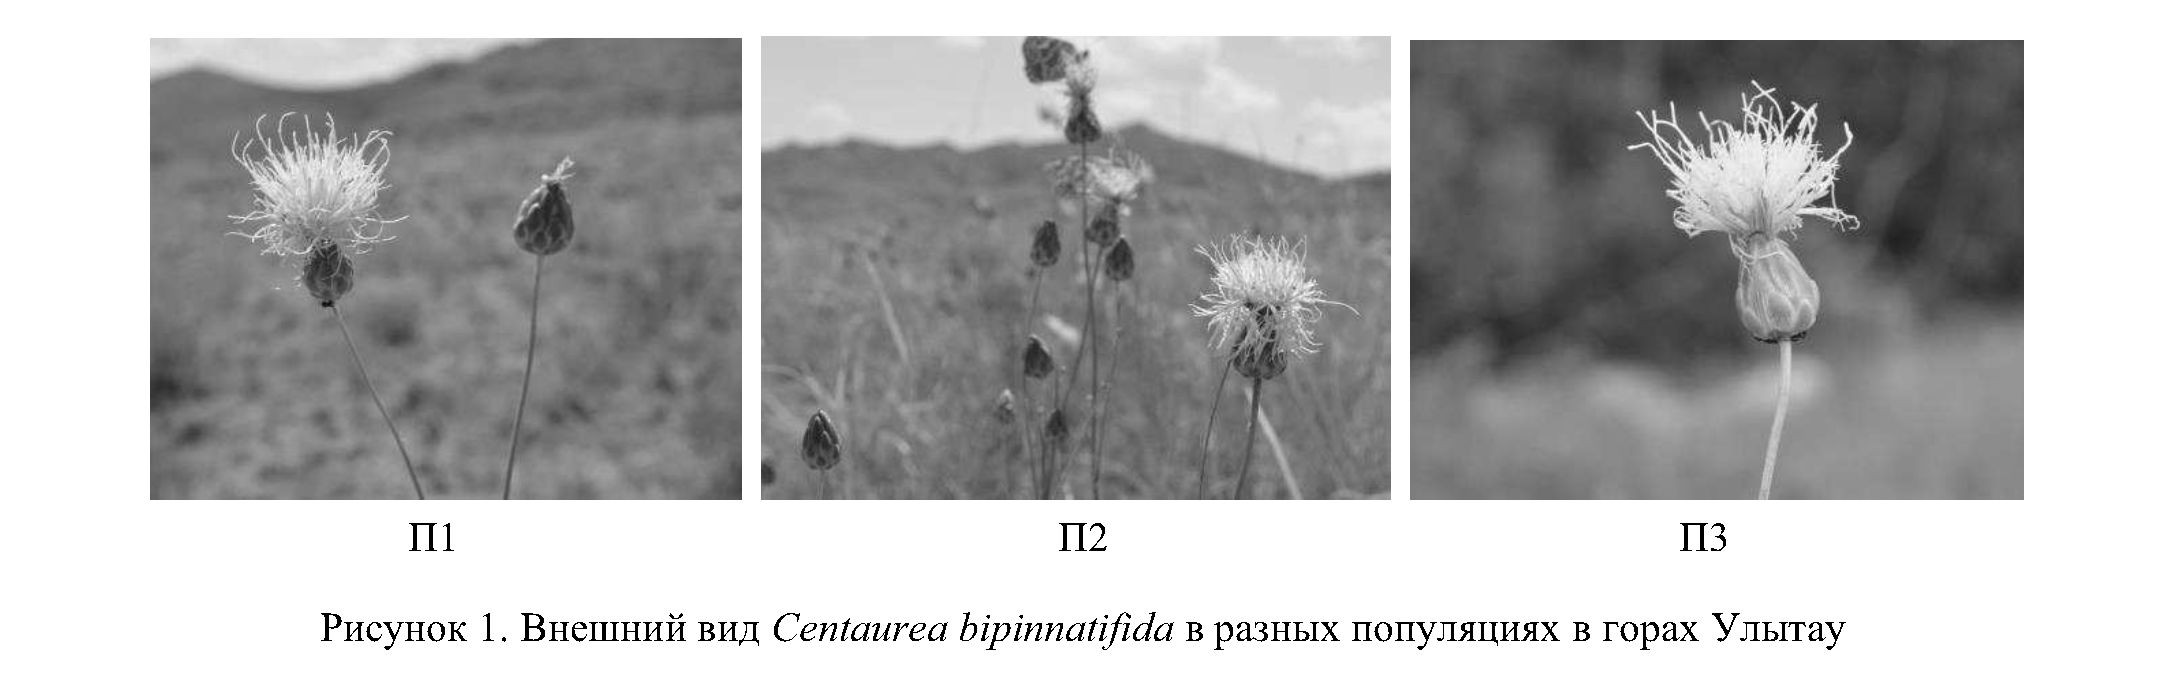 Современное состояние популяций Centaurea bipinnatifida в горах Улытау (Карагандинская область)